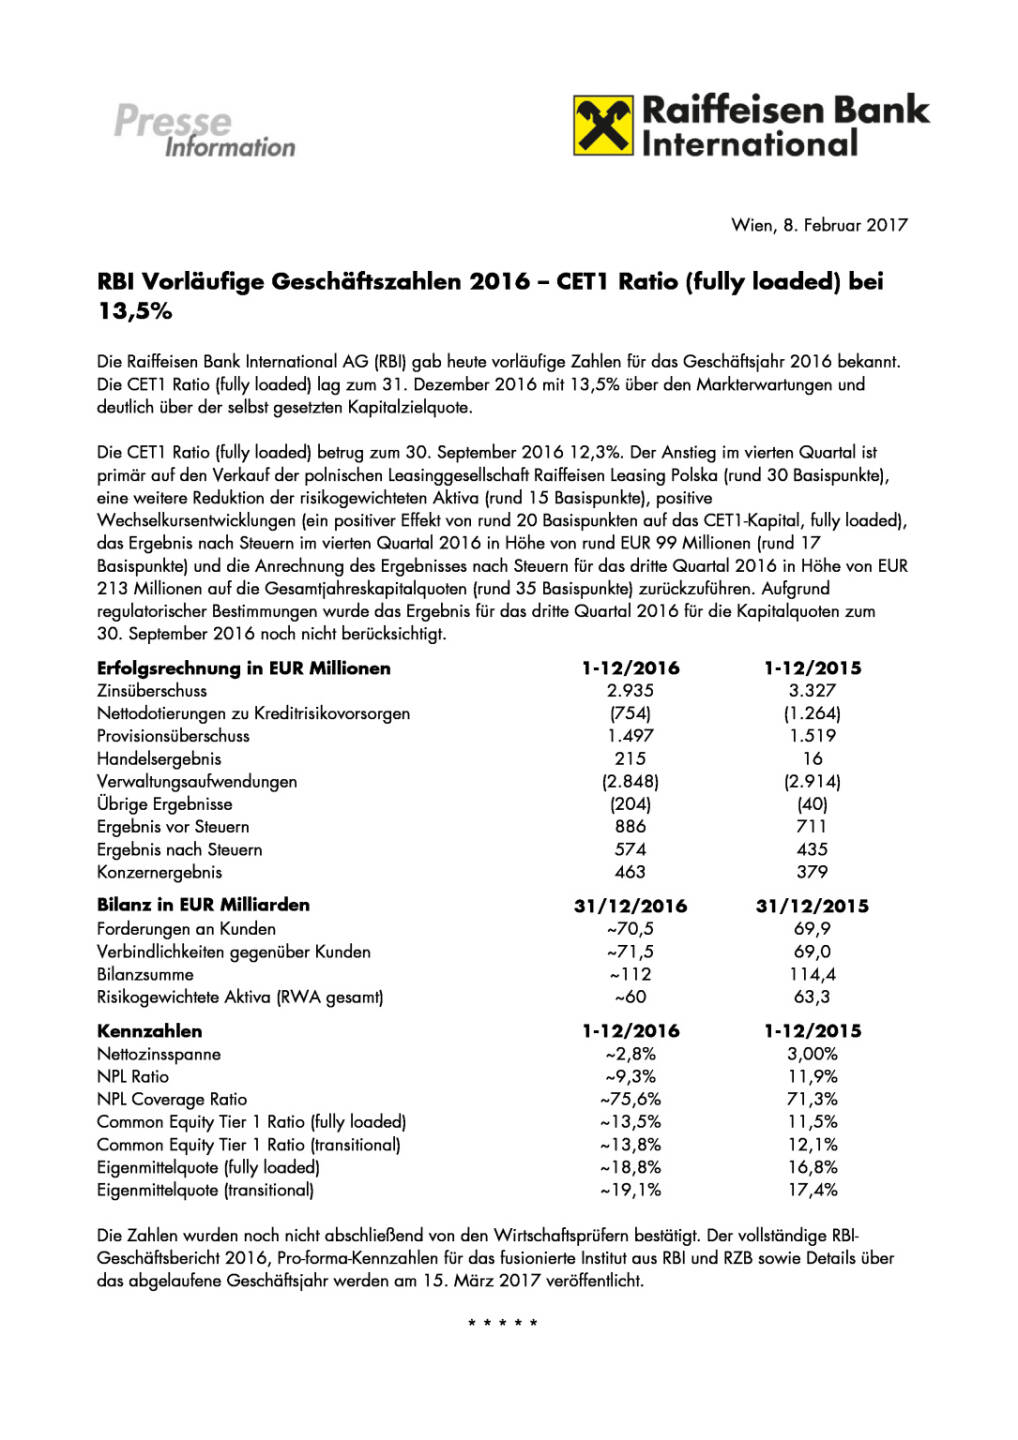 RBI Vorläufige Geschäftszahlen 2016, Seite 1/2, komplettes Dokument unter http://boerse-social.com/static/uploads/file_2099_rbi_vorlaufige_geschaftszahlen_2016.pdf